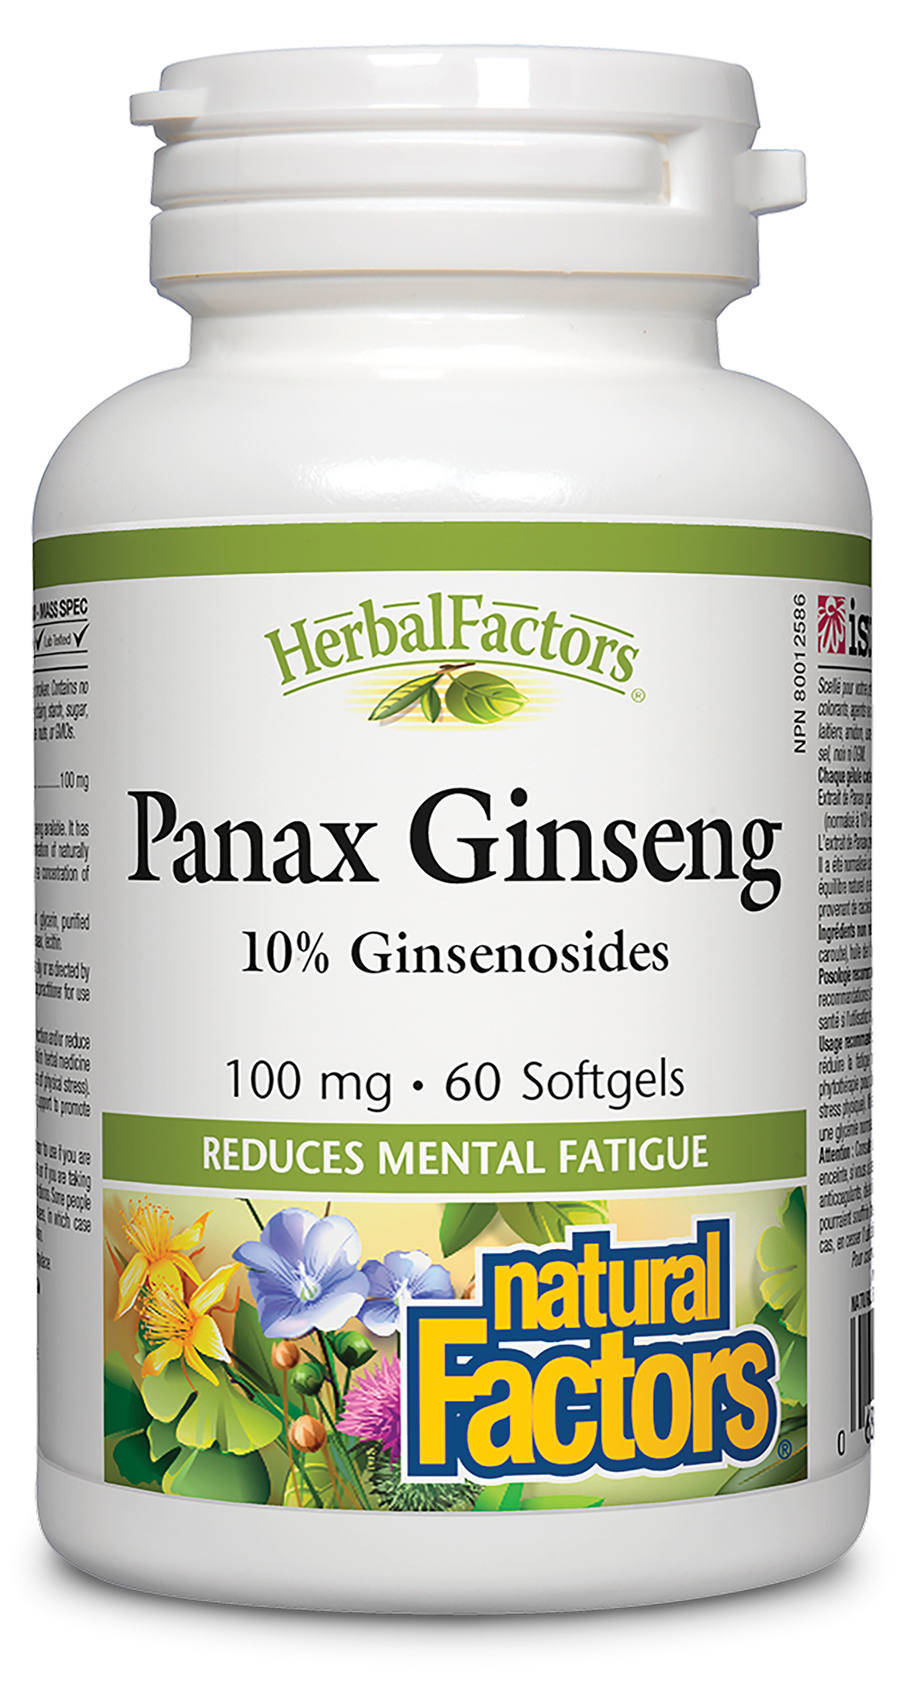 Natural Factors Panax Ginseng 100 mg 60 Softgels